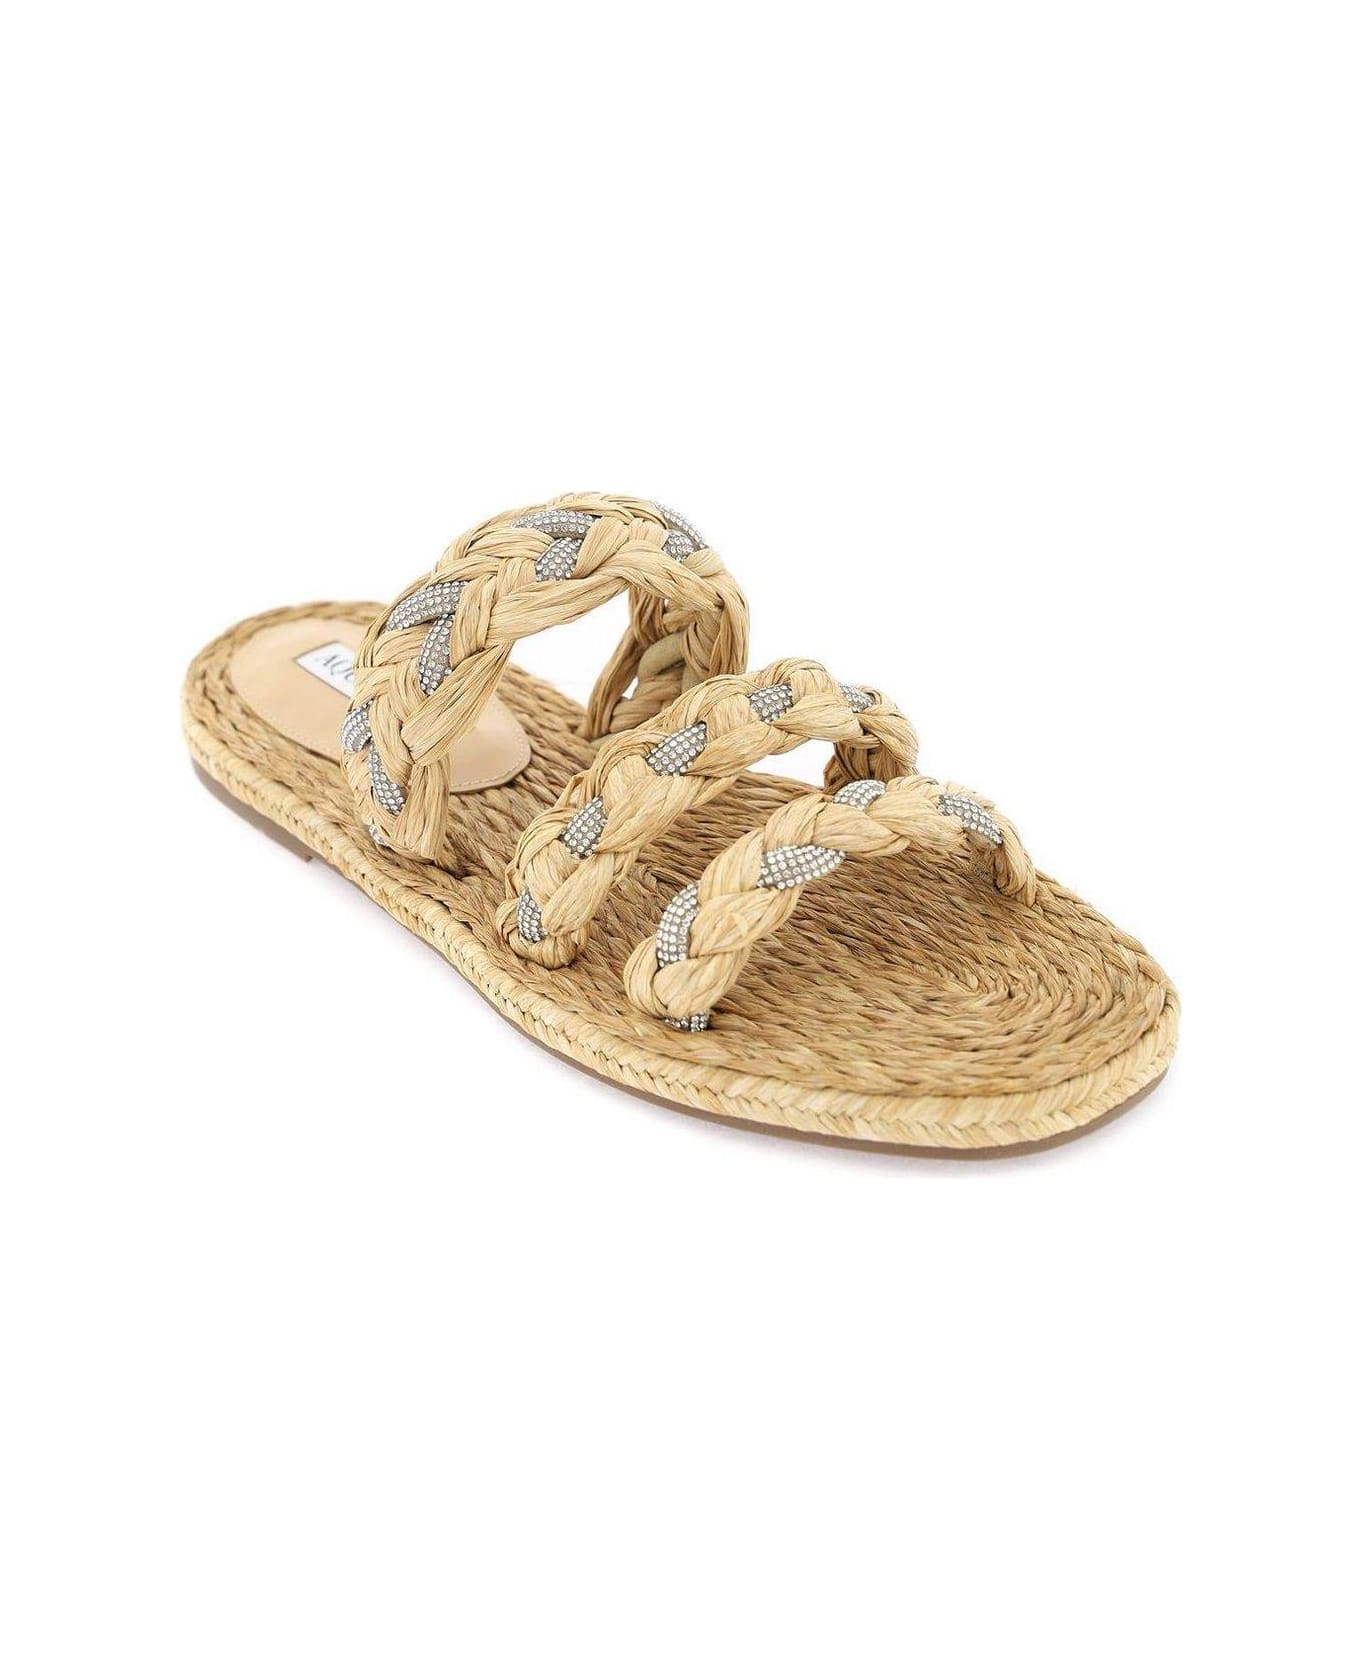 Aquazzura Embellished Slip-on Sandals - Neutro サンダル